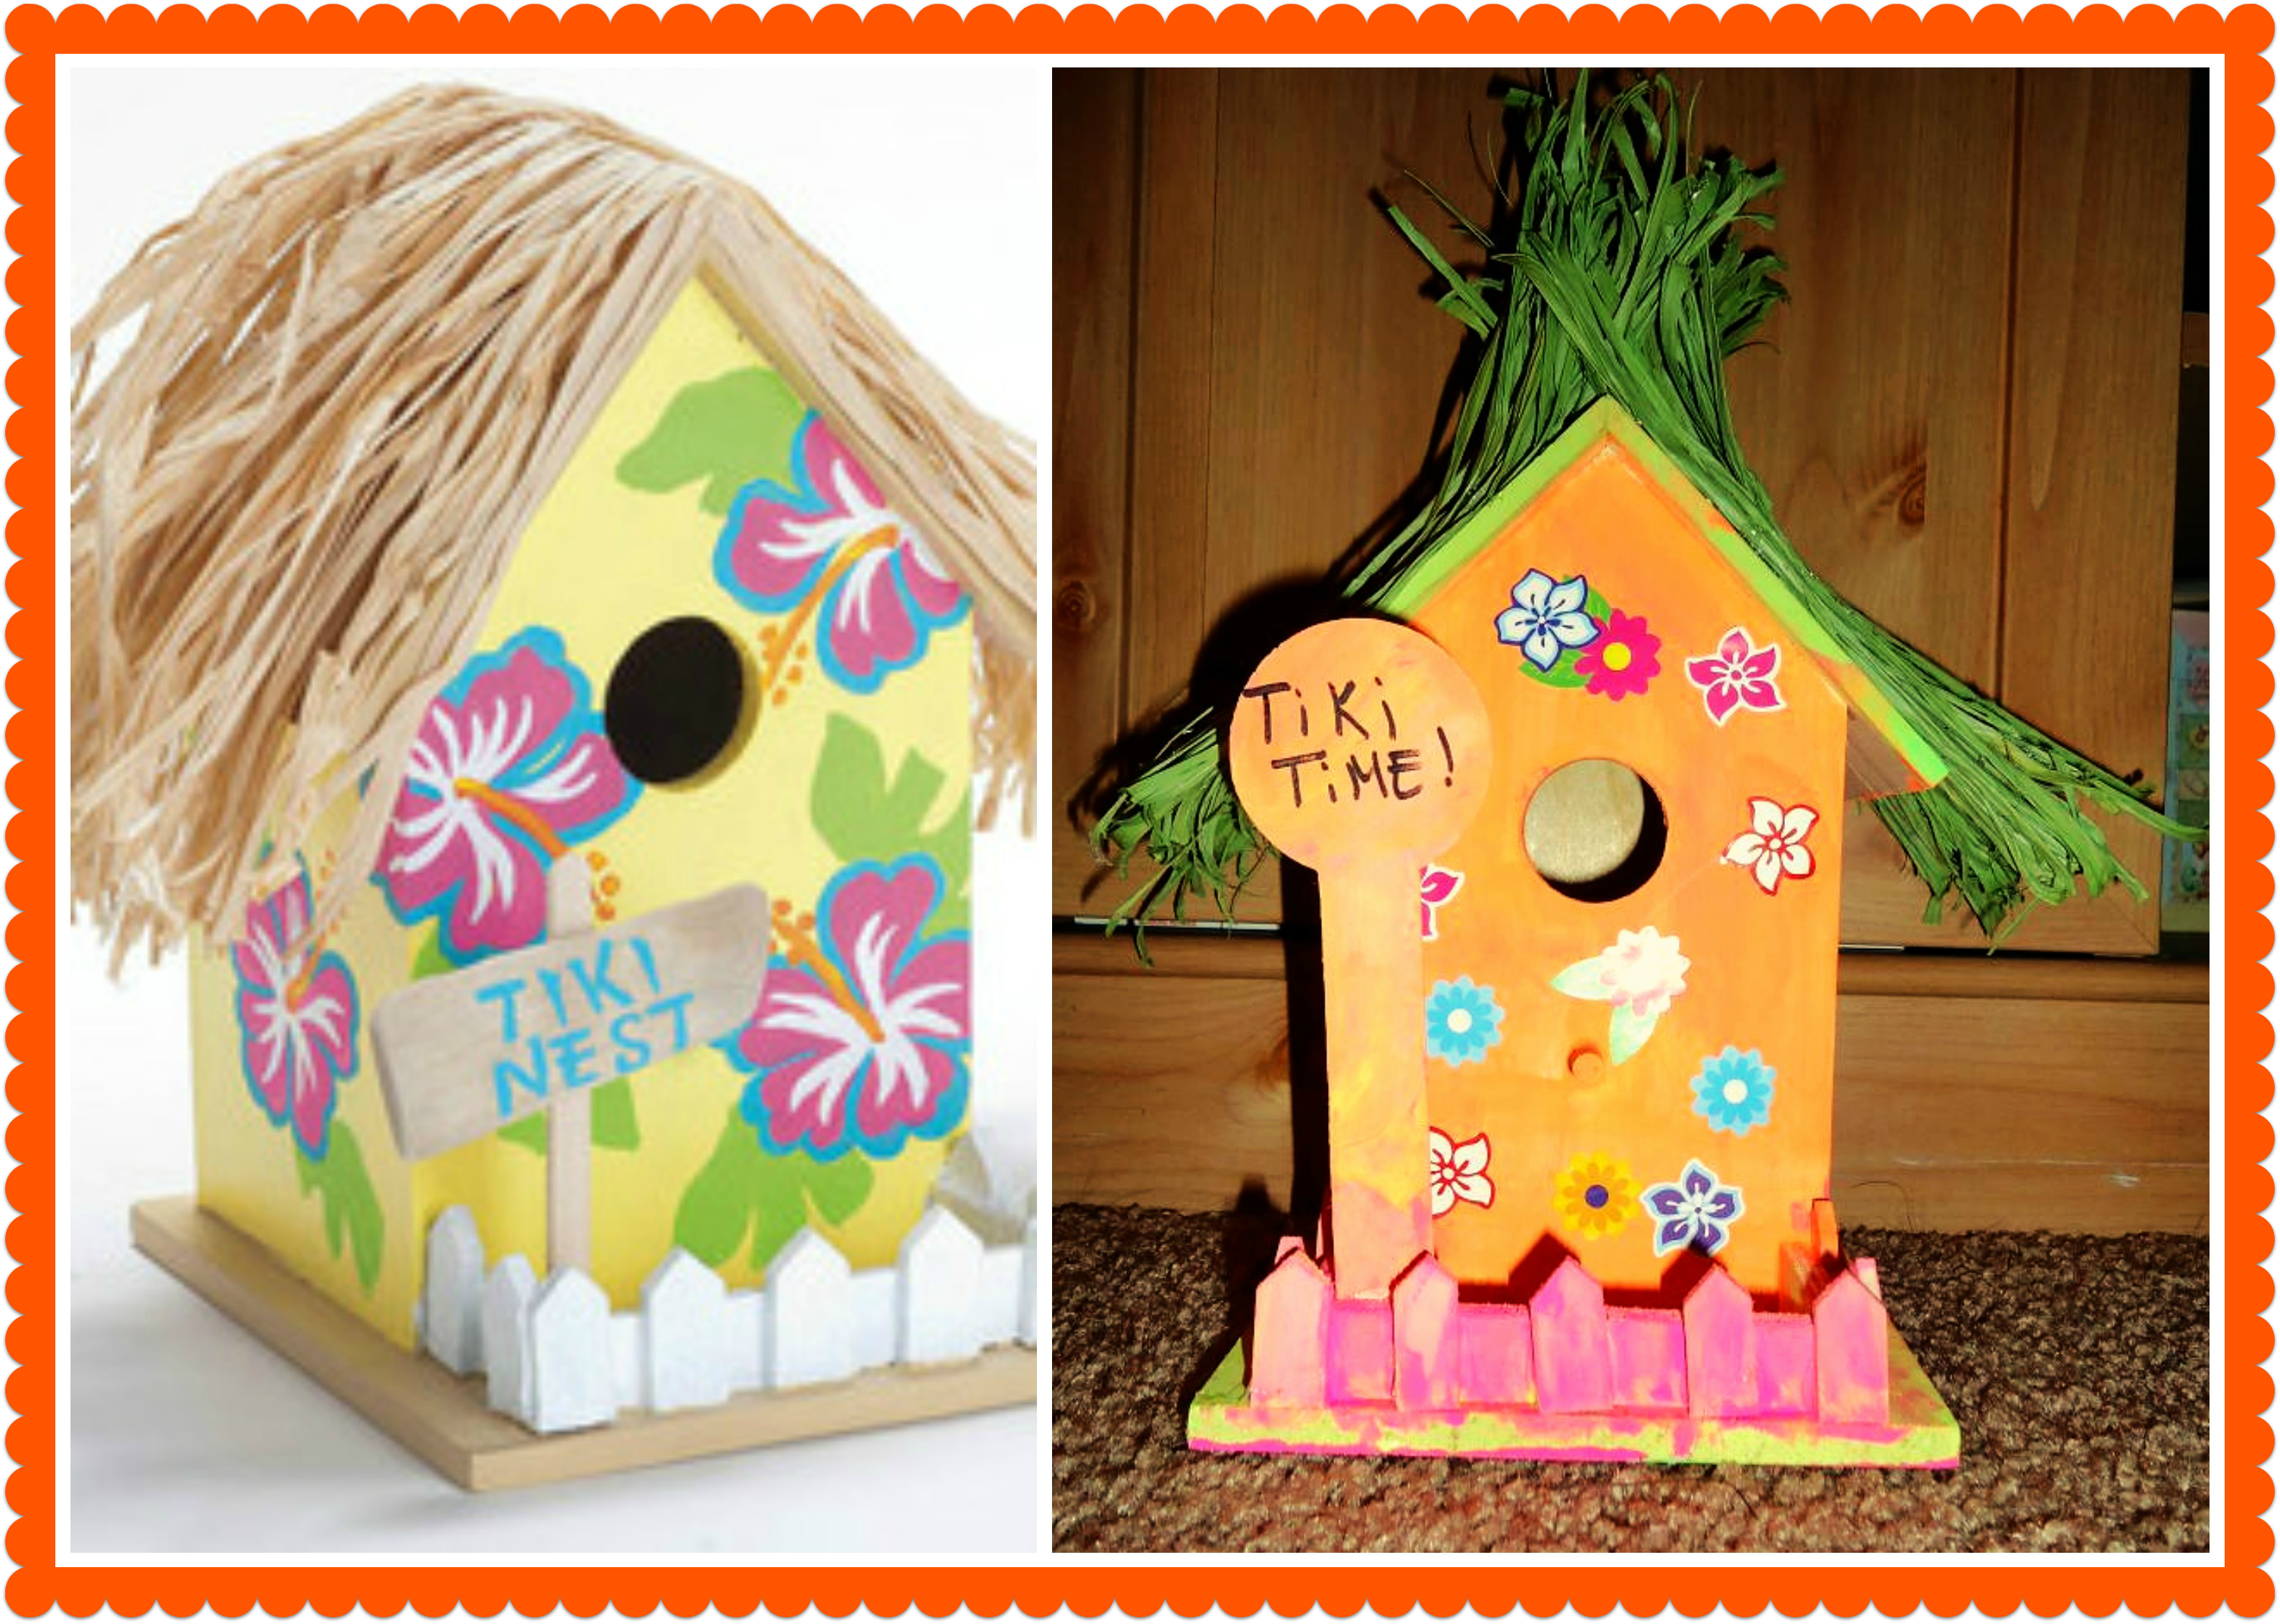 Tiki Birdhouse Craft